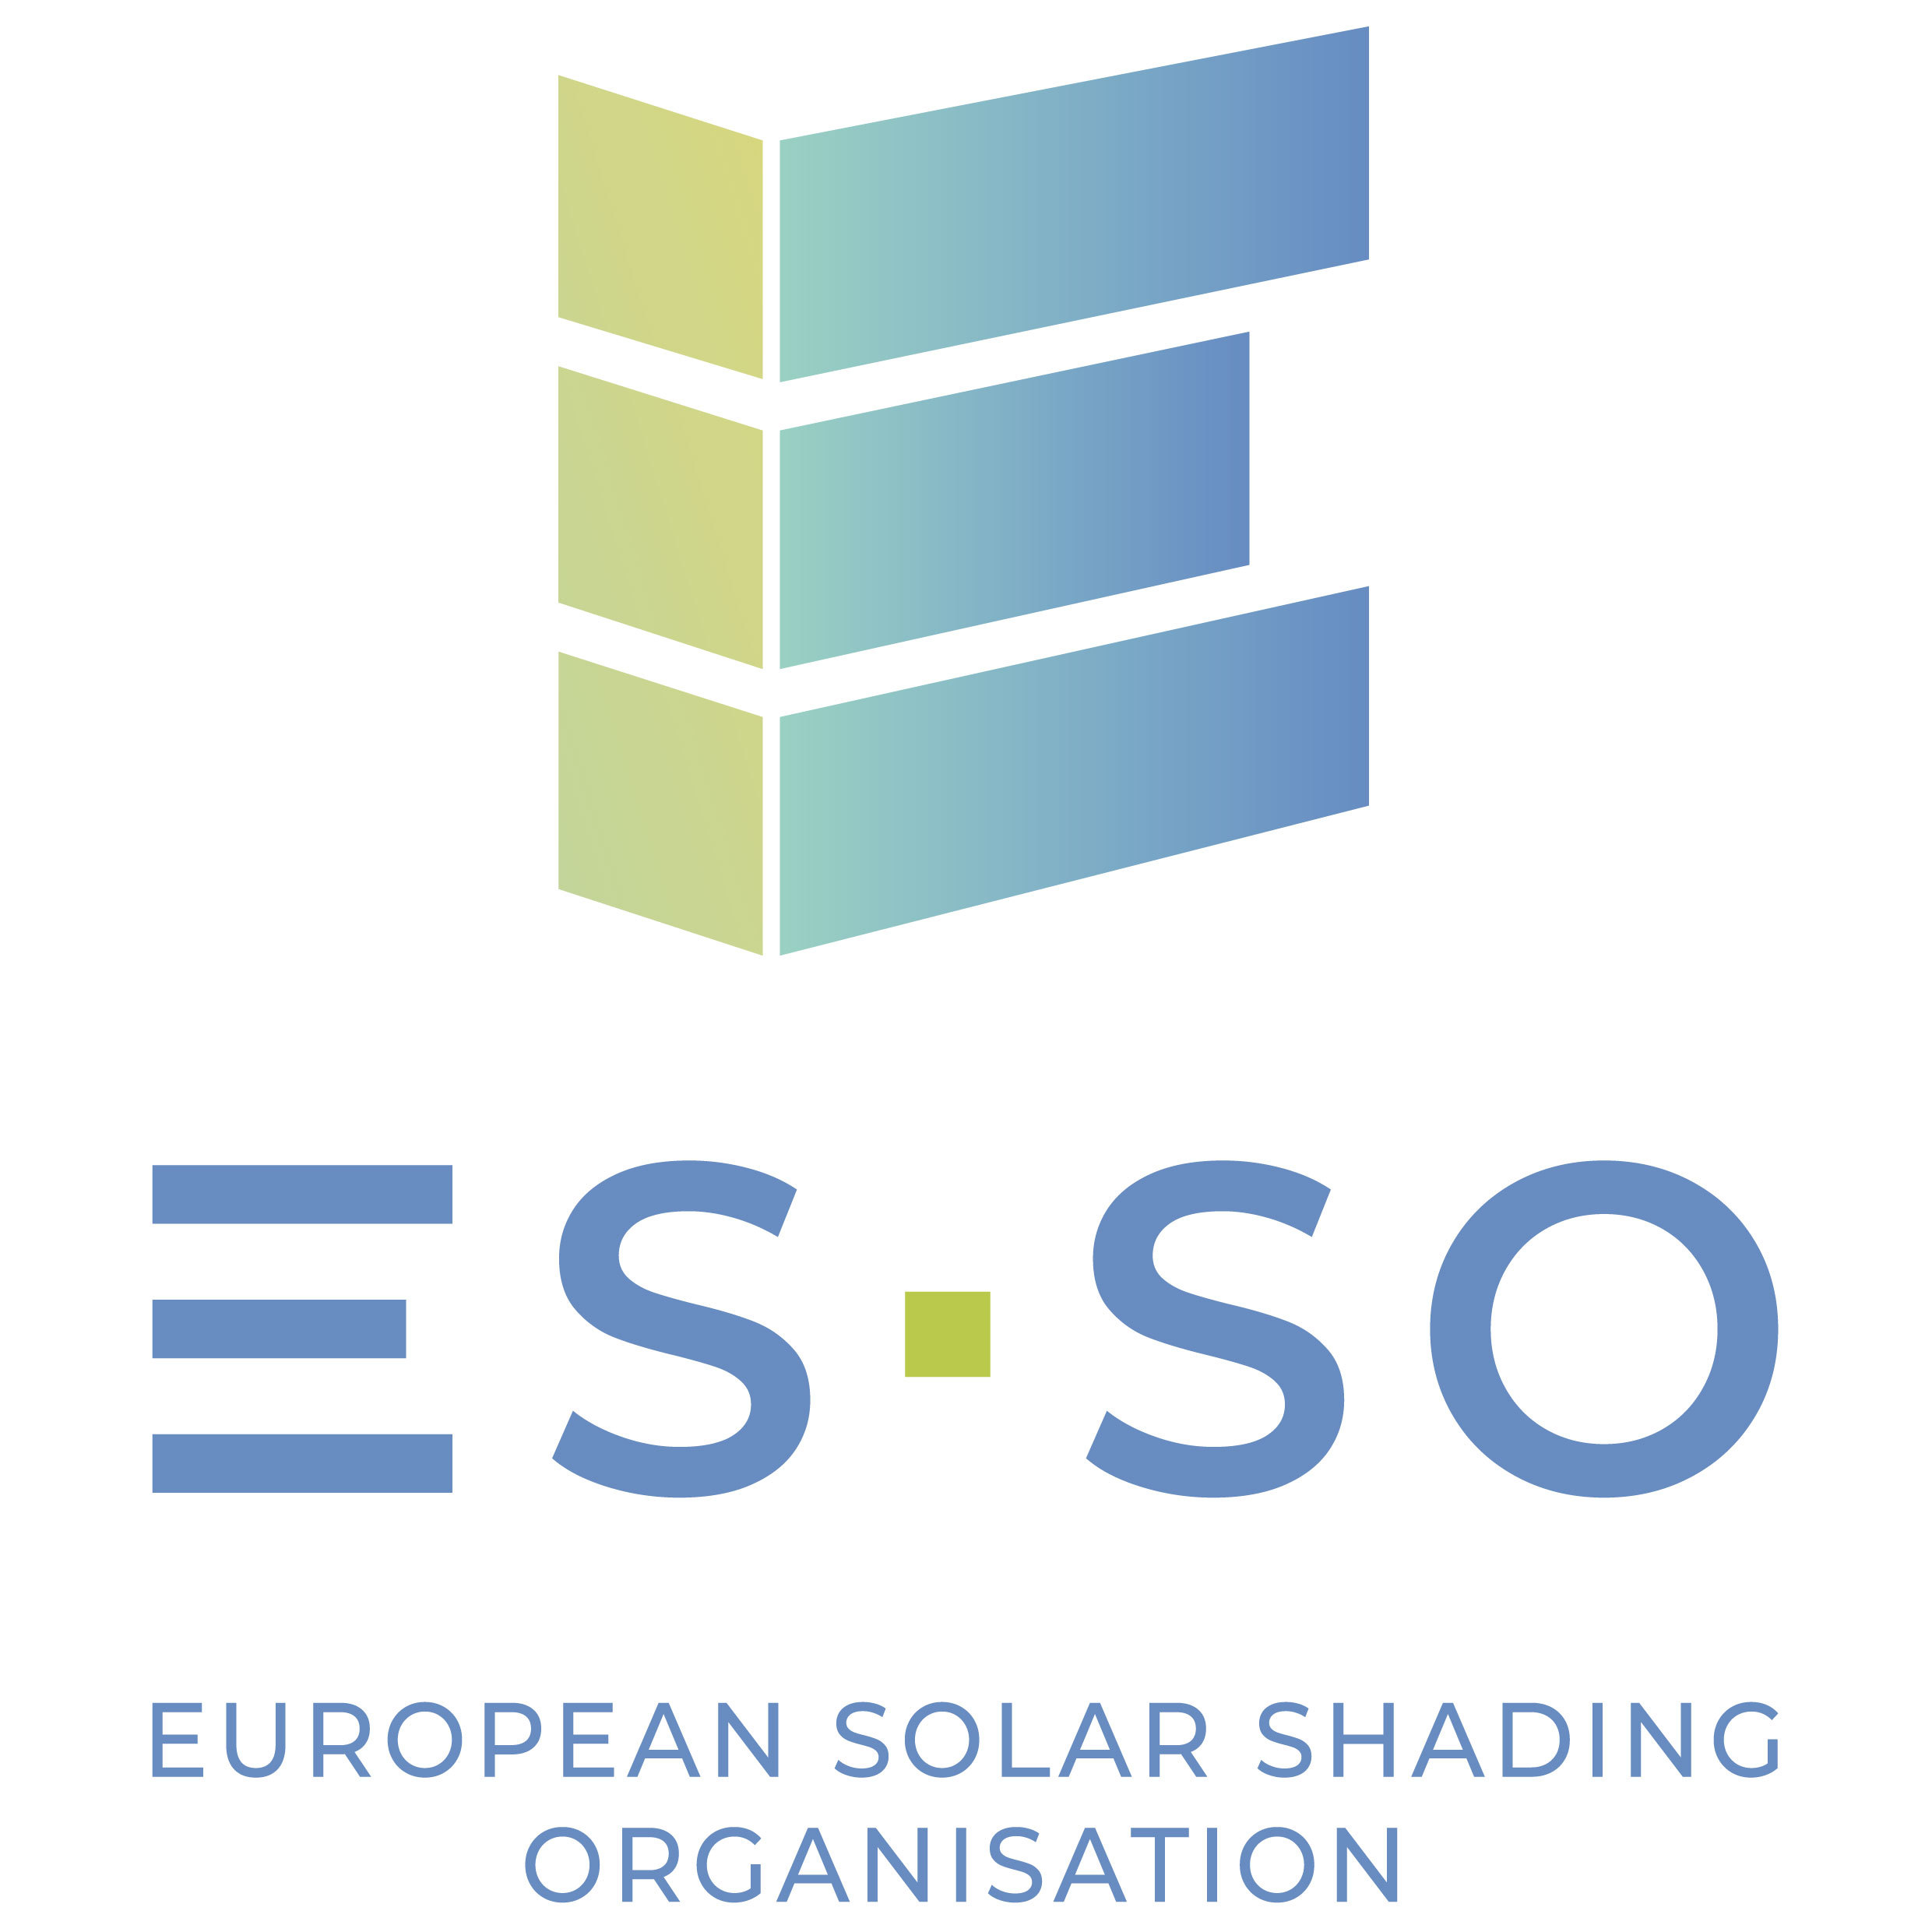 Logo ES-SO